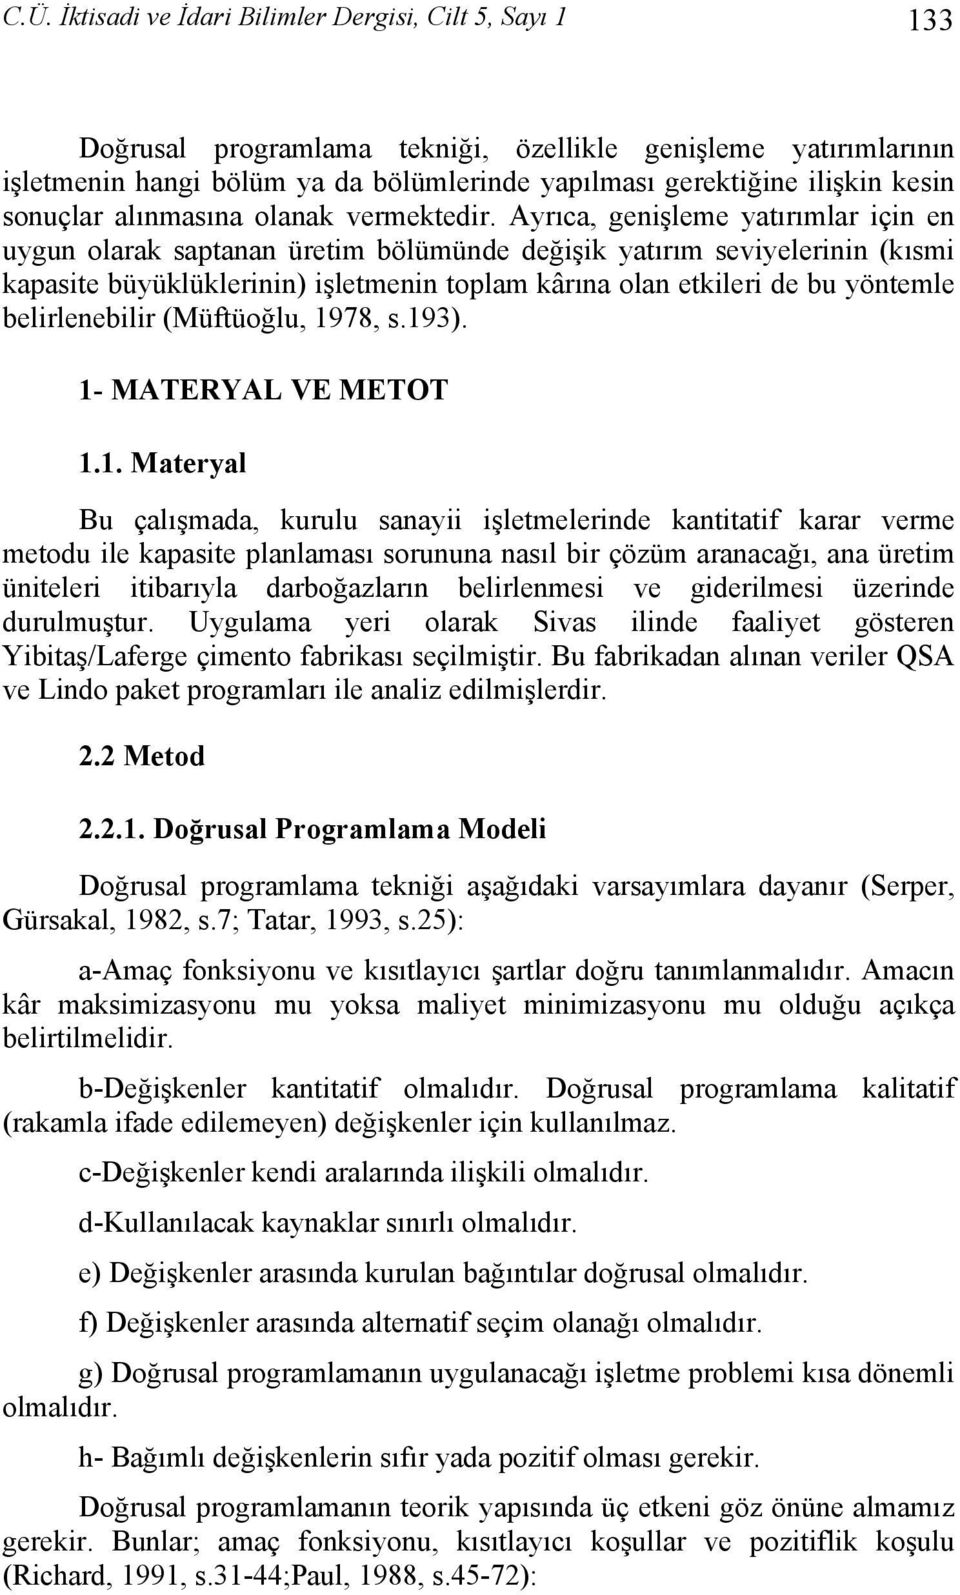 kârına olan etkileri de bu yöntemle belirlenebilir (Müftüoğlu, 978, s93) - MATERYAL VE METOT Materyal Bu çalışmada, kurulu sanayii işletmelerinde kantitatif karar verme metodu ile kapasite planlaması